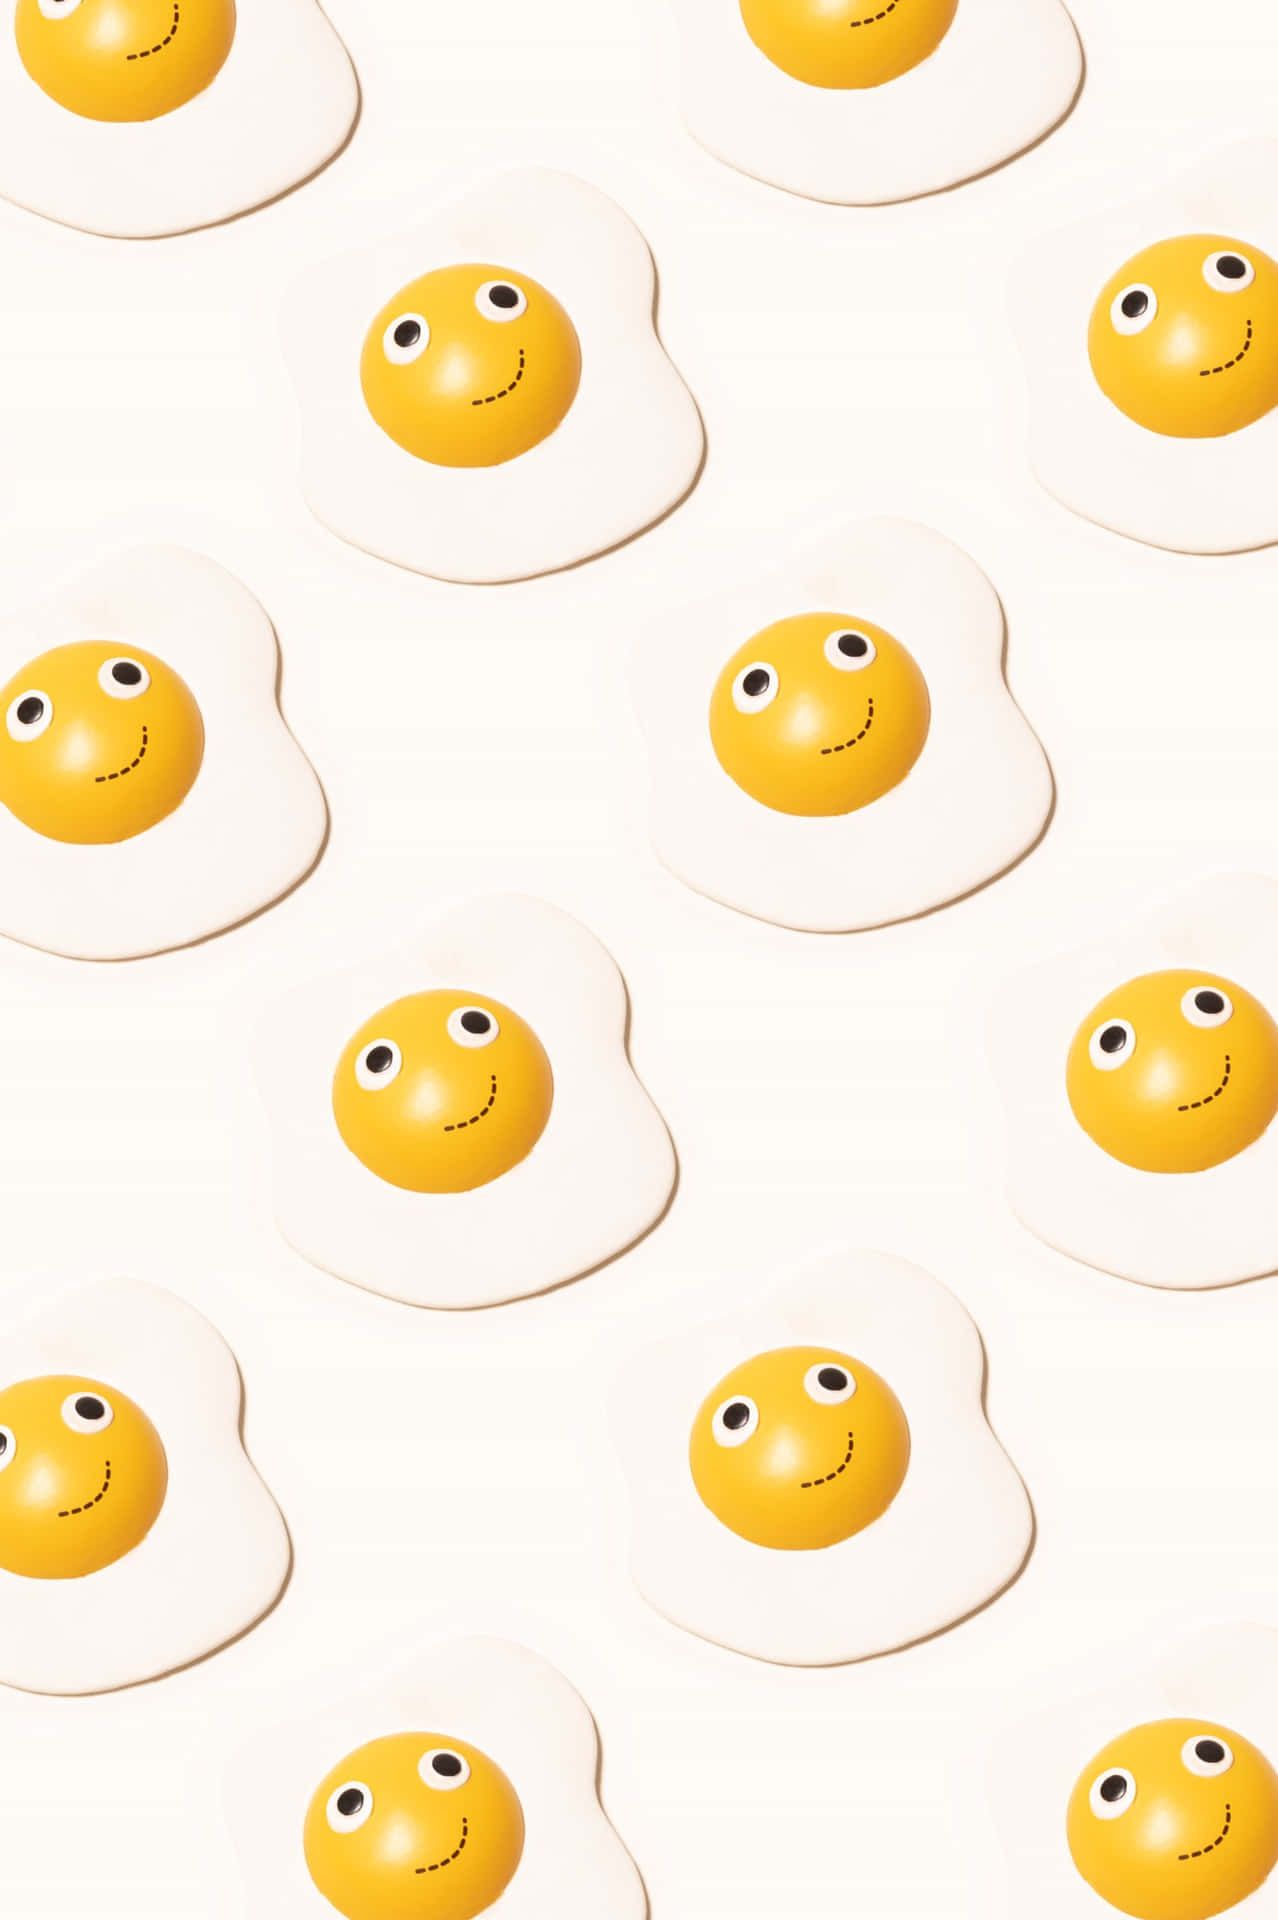 Download Caption: A Lively Smile Emoji Blended with Sunny Side Up Egg Wallpaper